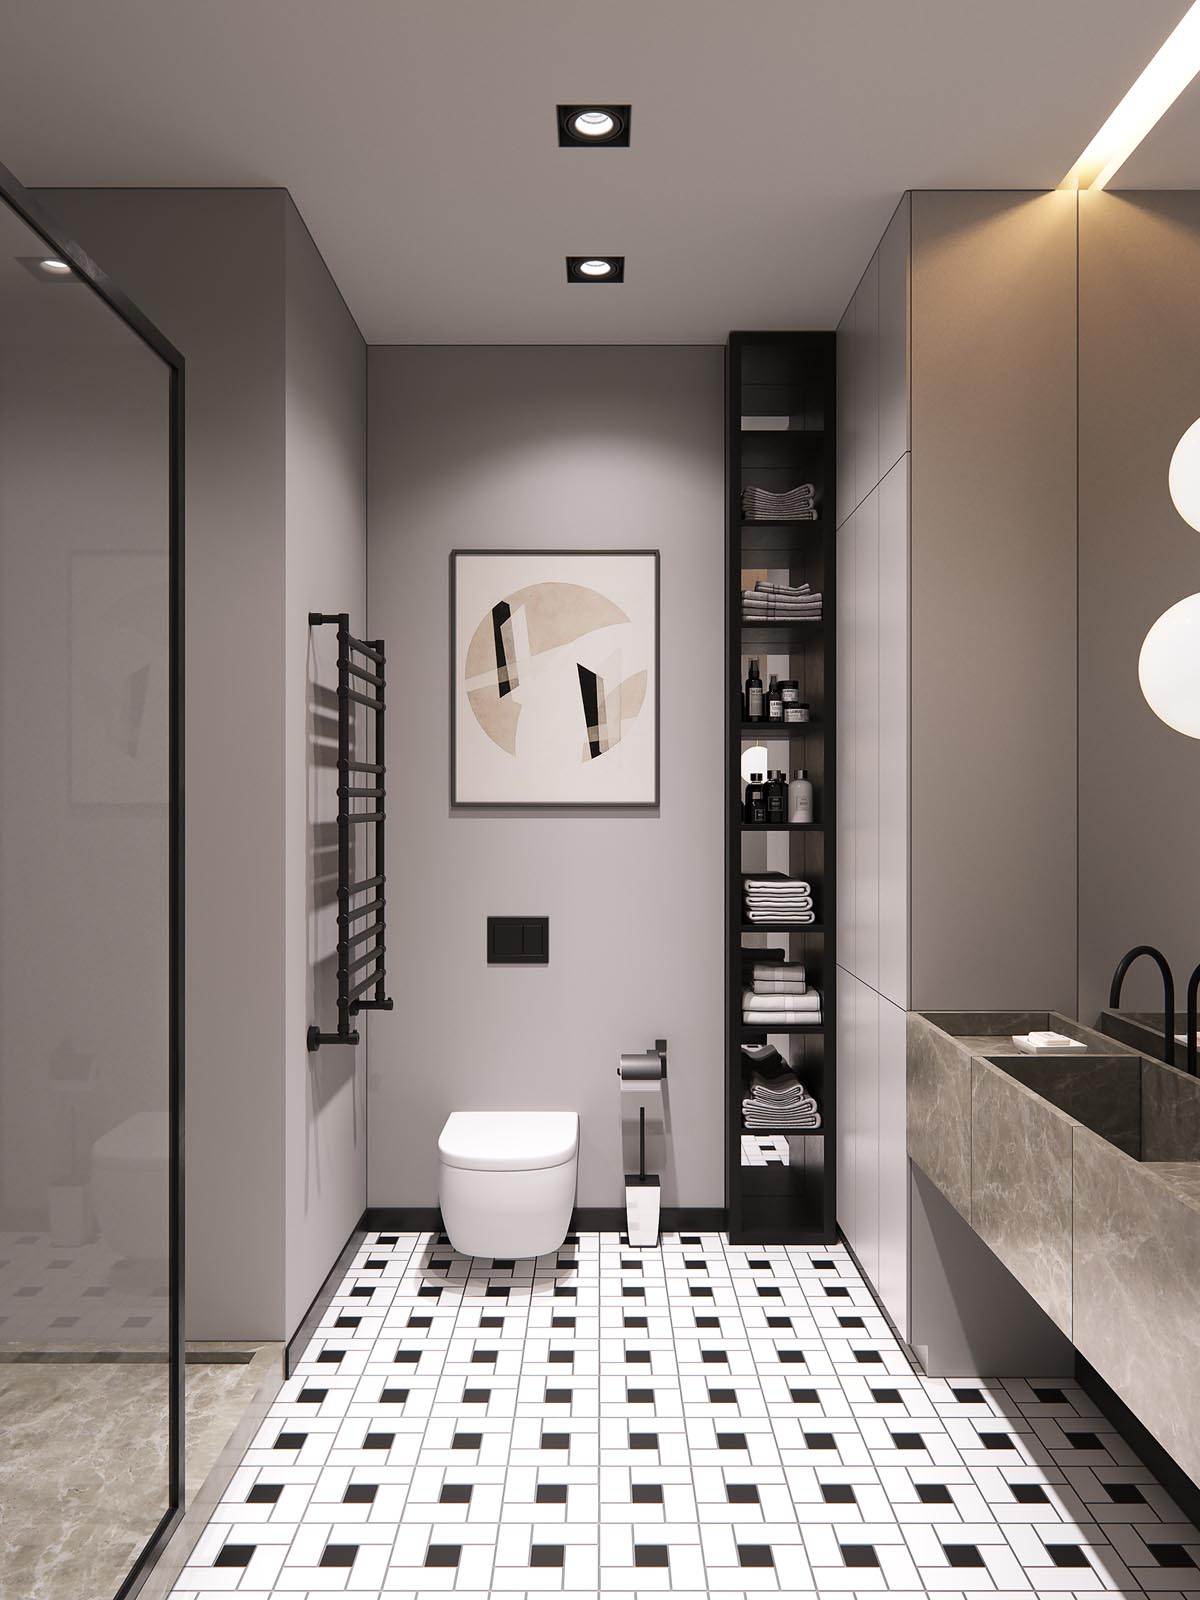 Phòng tắm đẹp đơn giản với gạch lát sàn họa tiết tối giản của những ô vuông, chữ nhật màu trắng và đen.